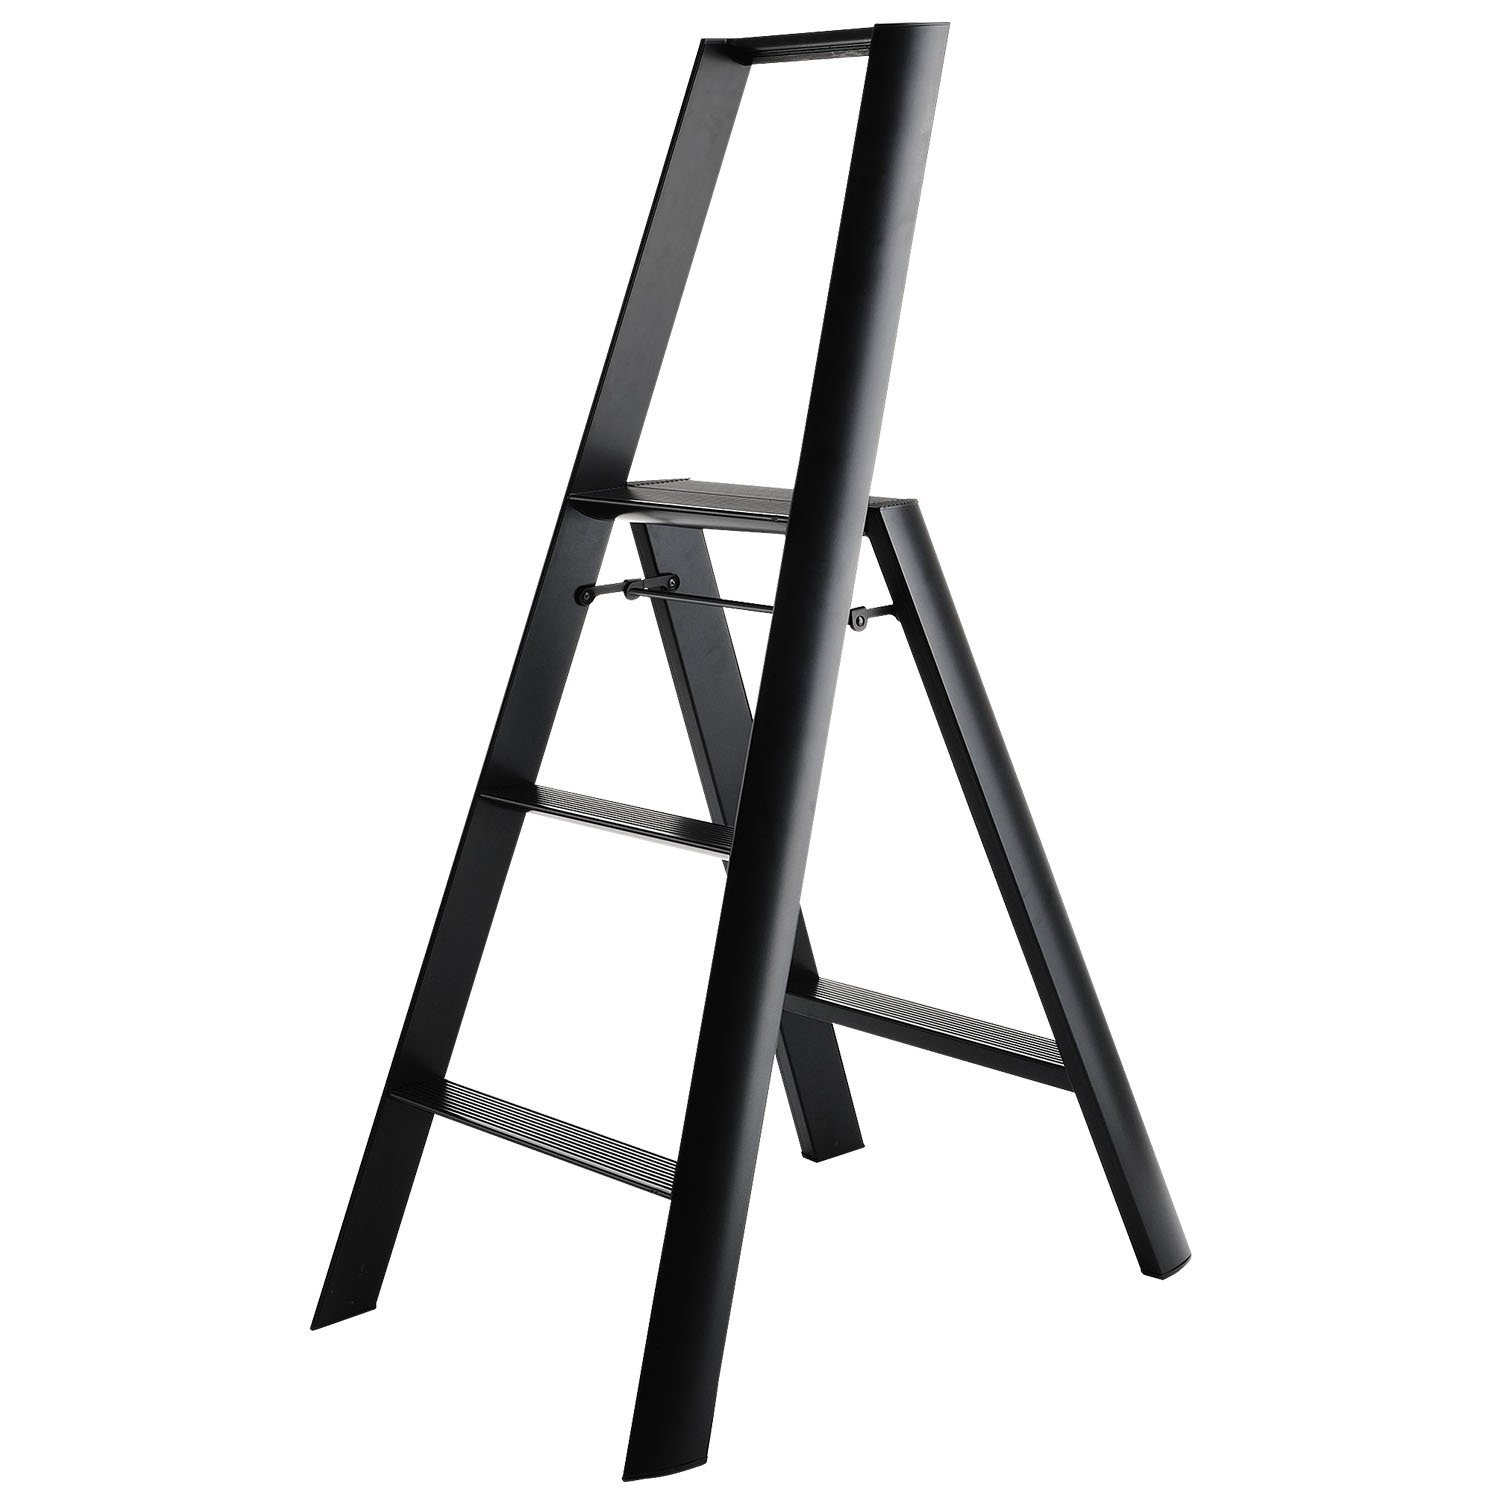 Amazon.com: Lucano step stool Slim Design 3 step Black Folding ...